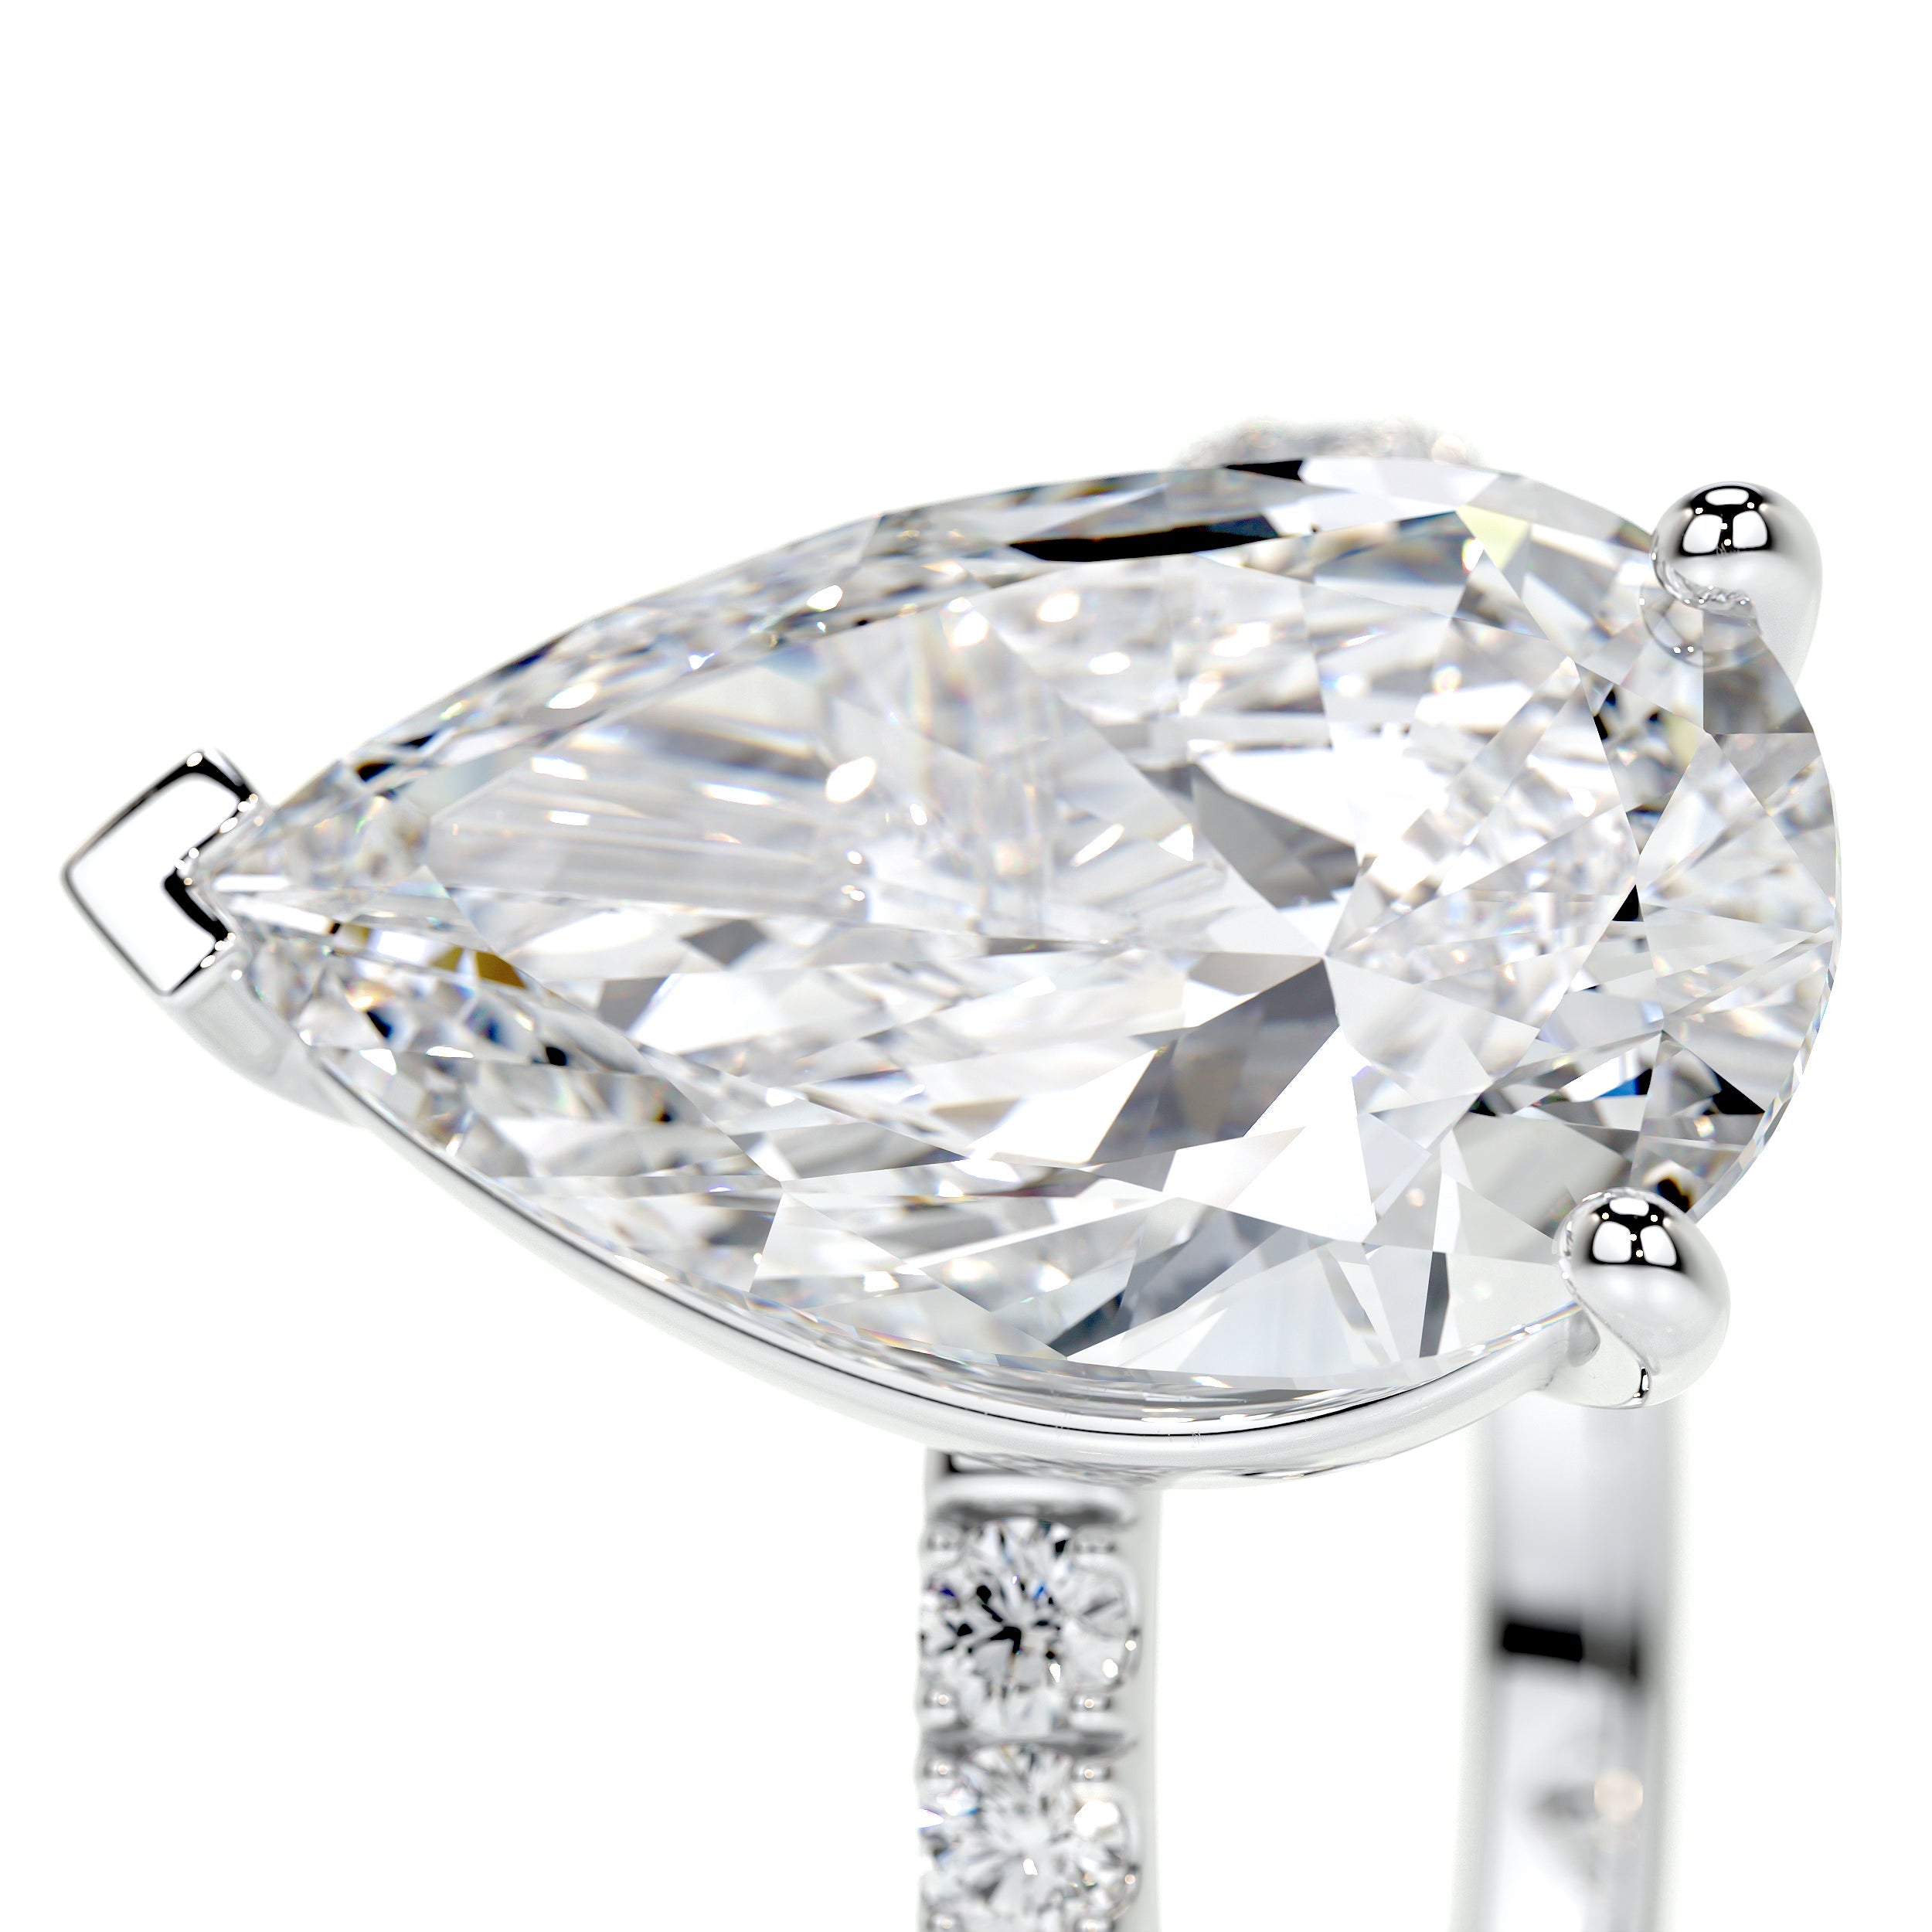 Jenny Lab Grown Diamond Ring   (5.5 Carat) -18K White Gold